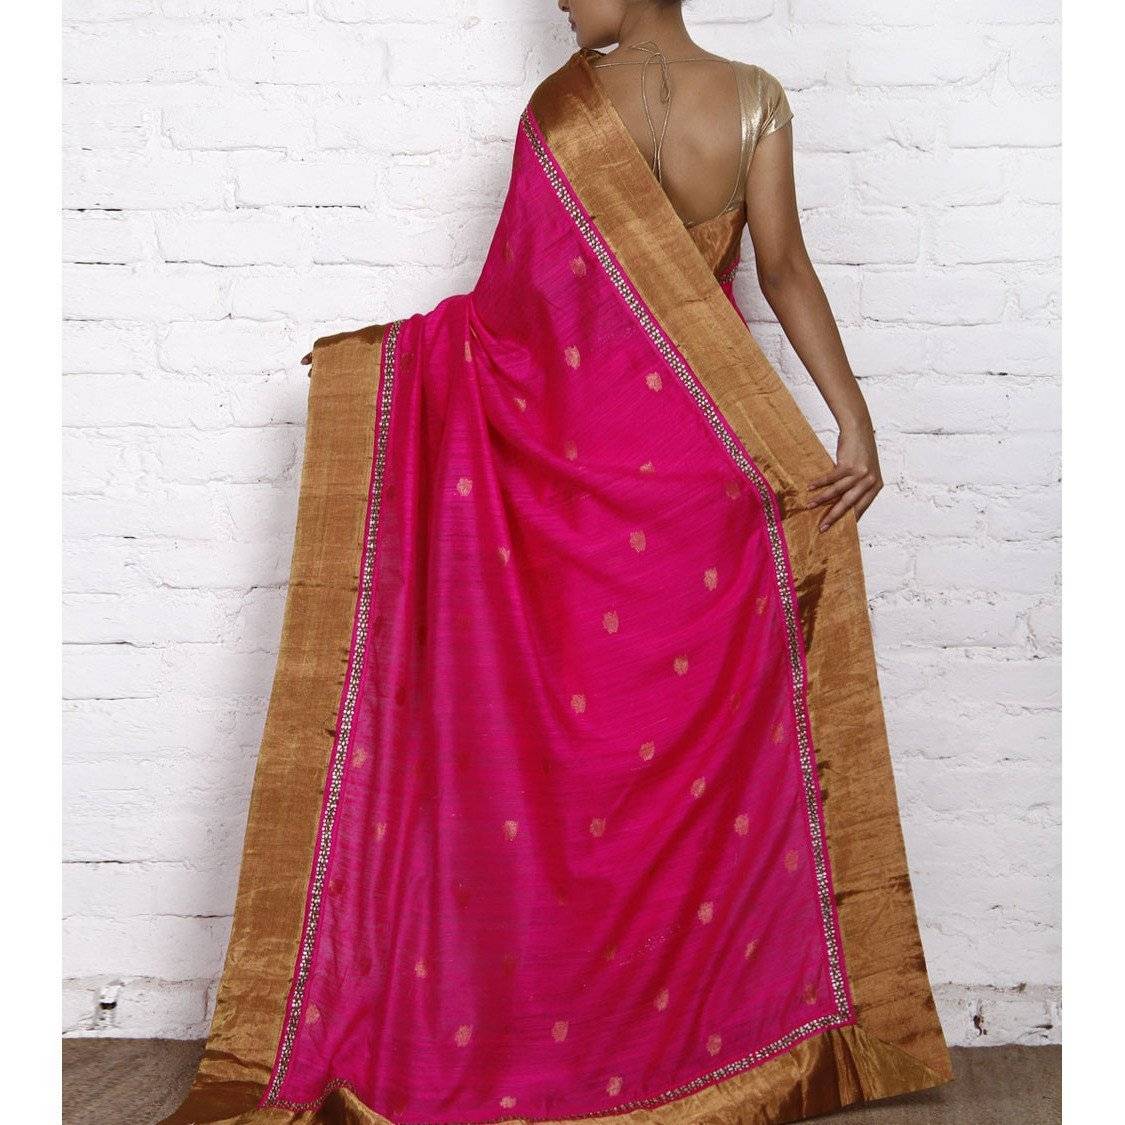 Pink Handwoven Tussar Silk Saree